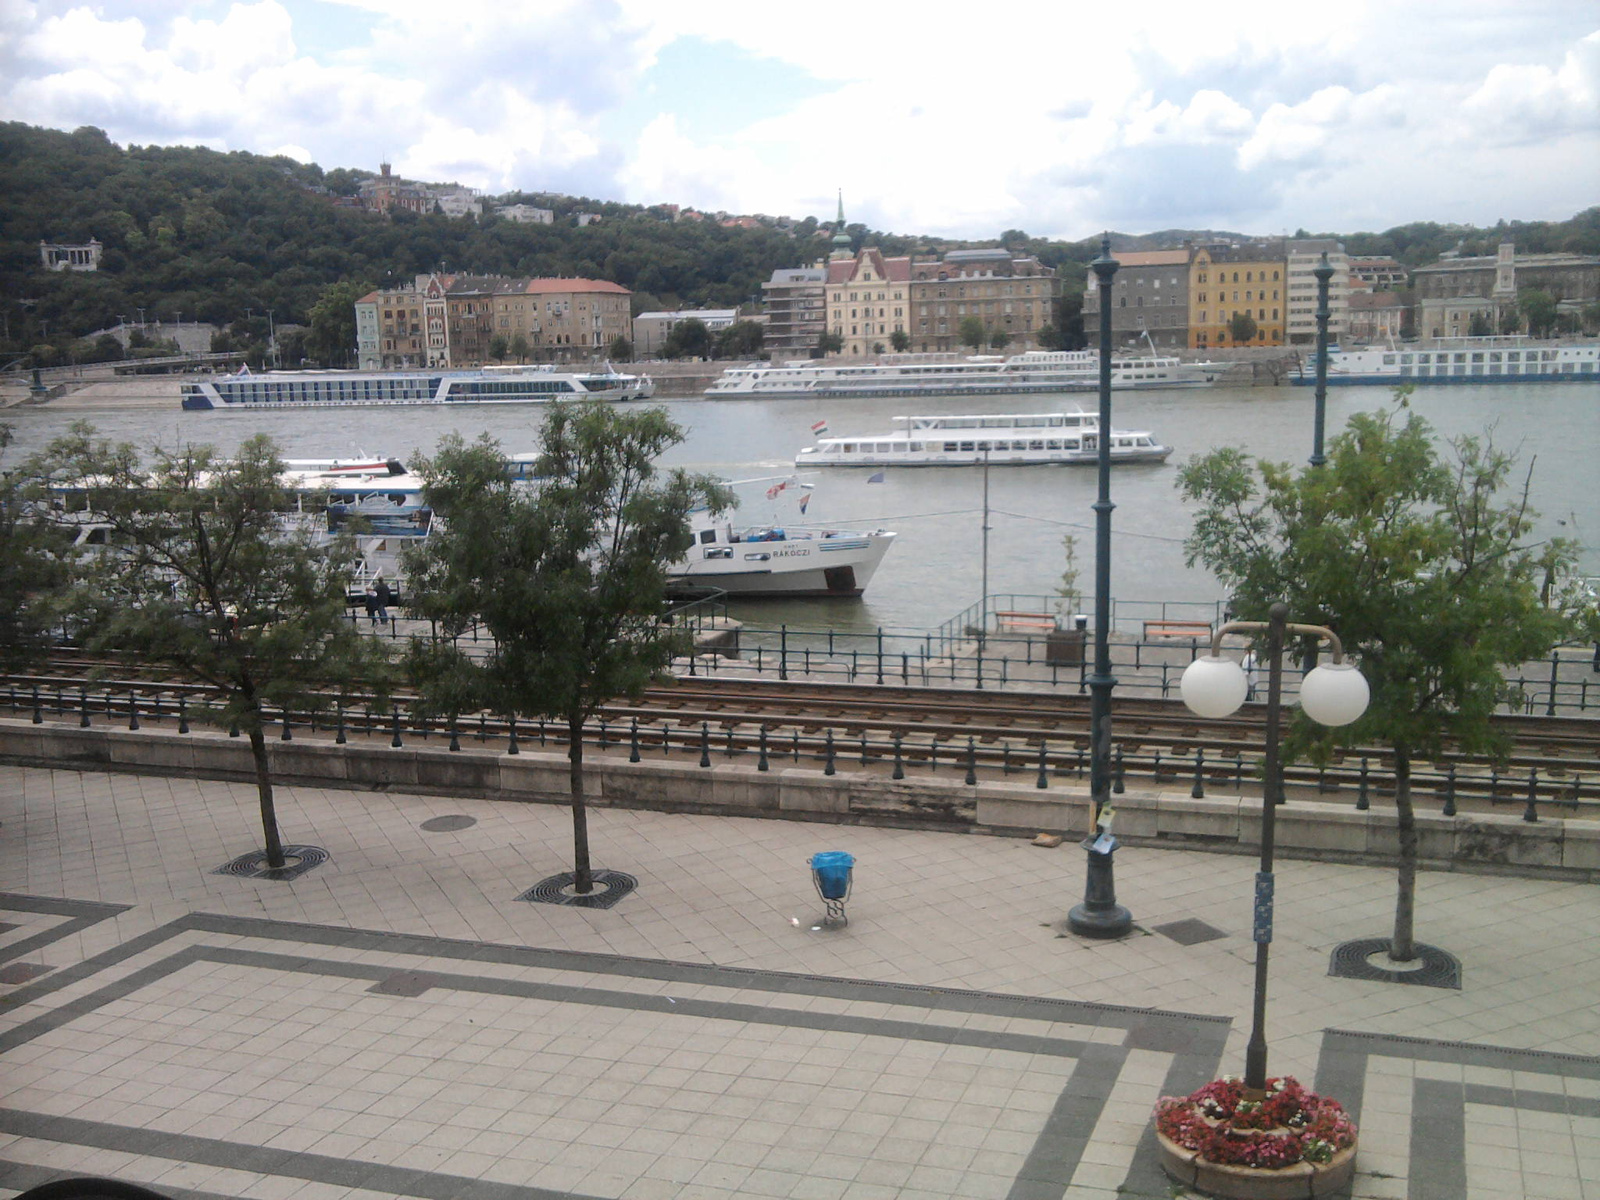 Budapest Mariott hotel kilátása és a hajók:)